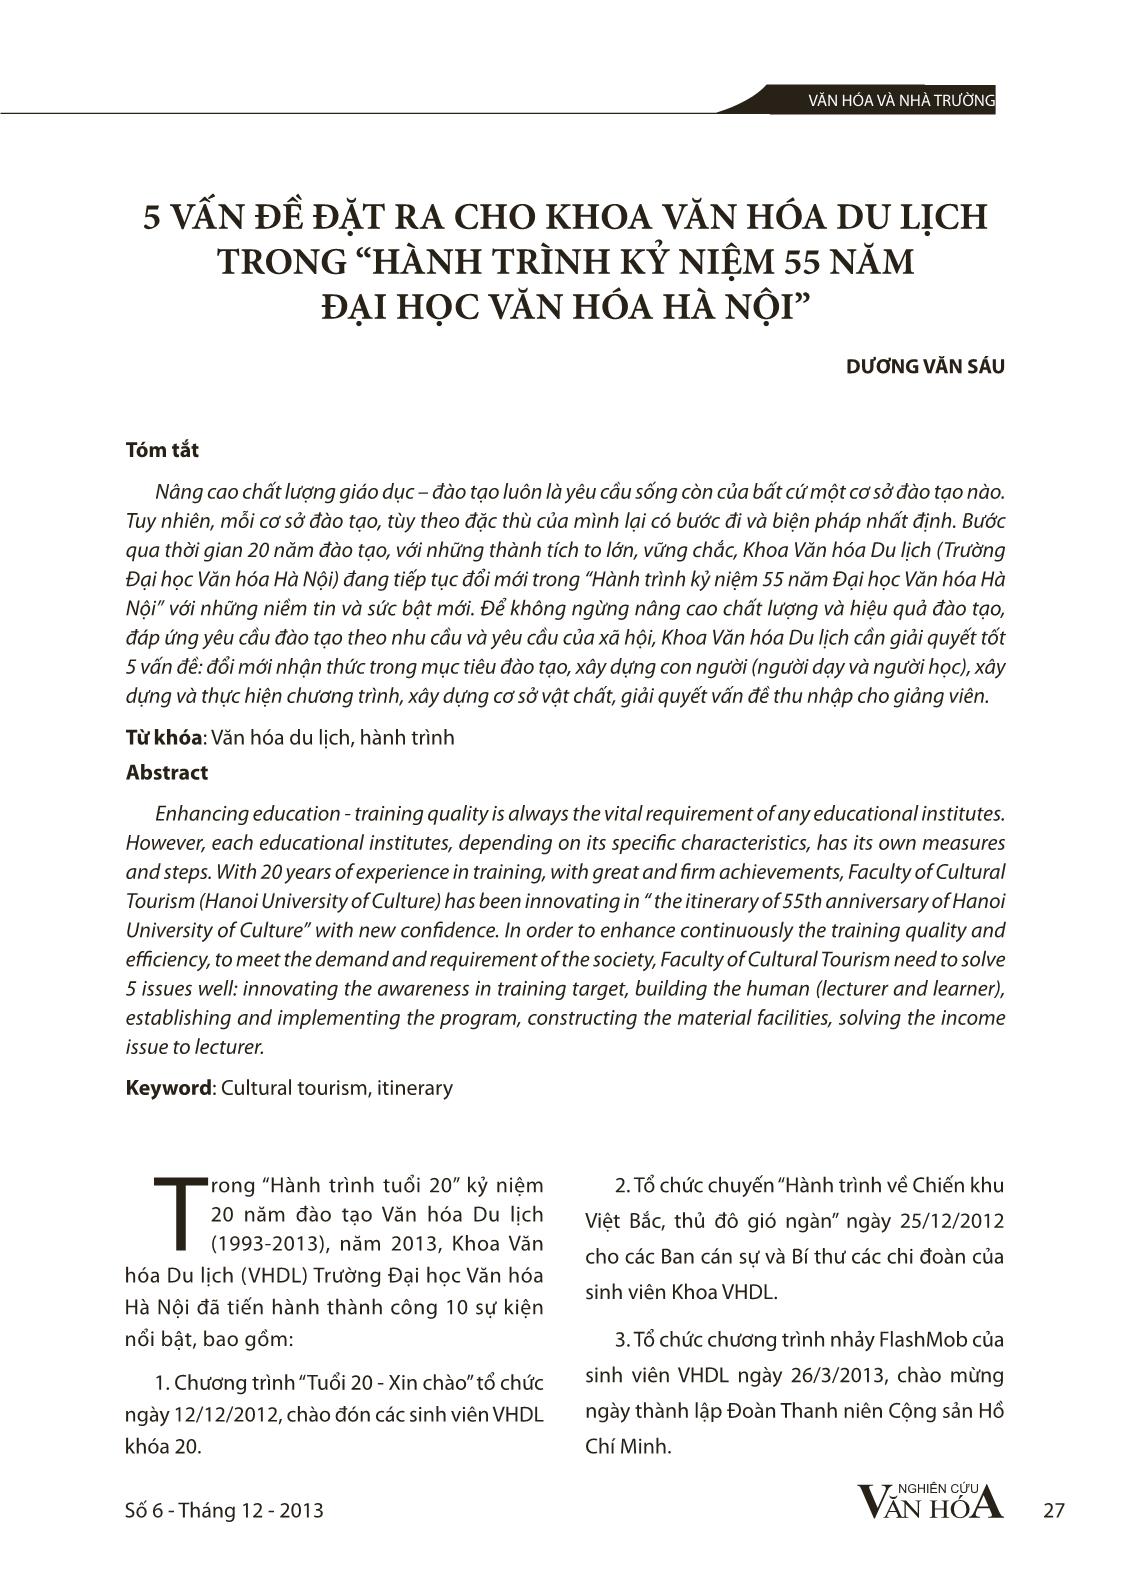 5 vấn đề đặt ra cho khoa văn hóa du lịch trong “Hành trình kỷ niệm 55 năm đại học văn hóa Hà Nội” trang 1